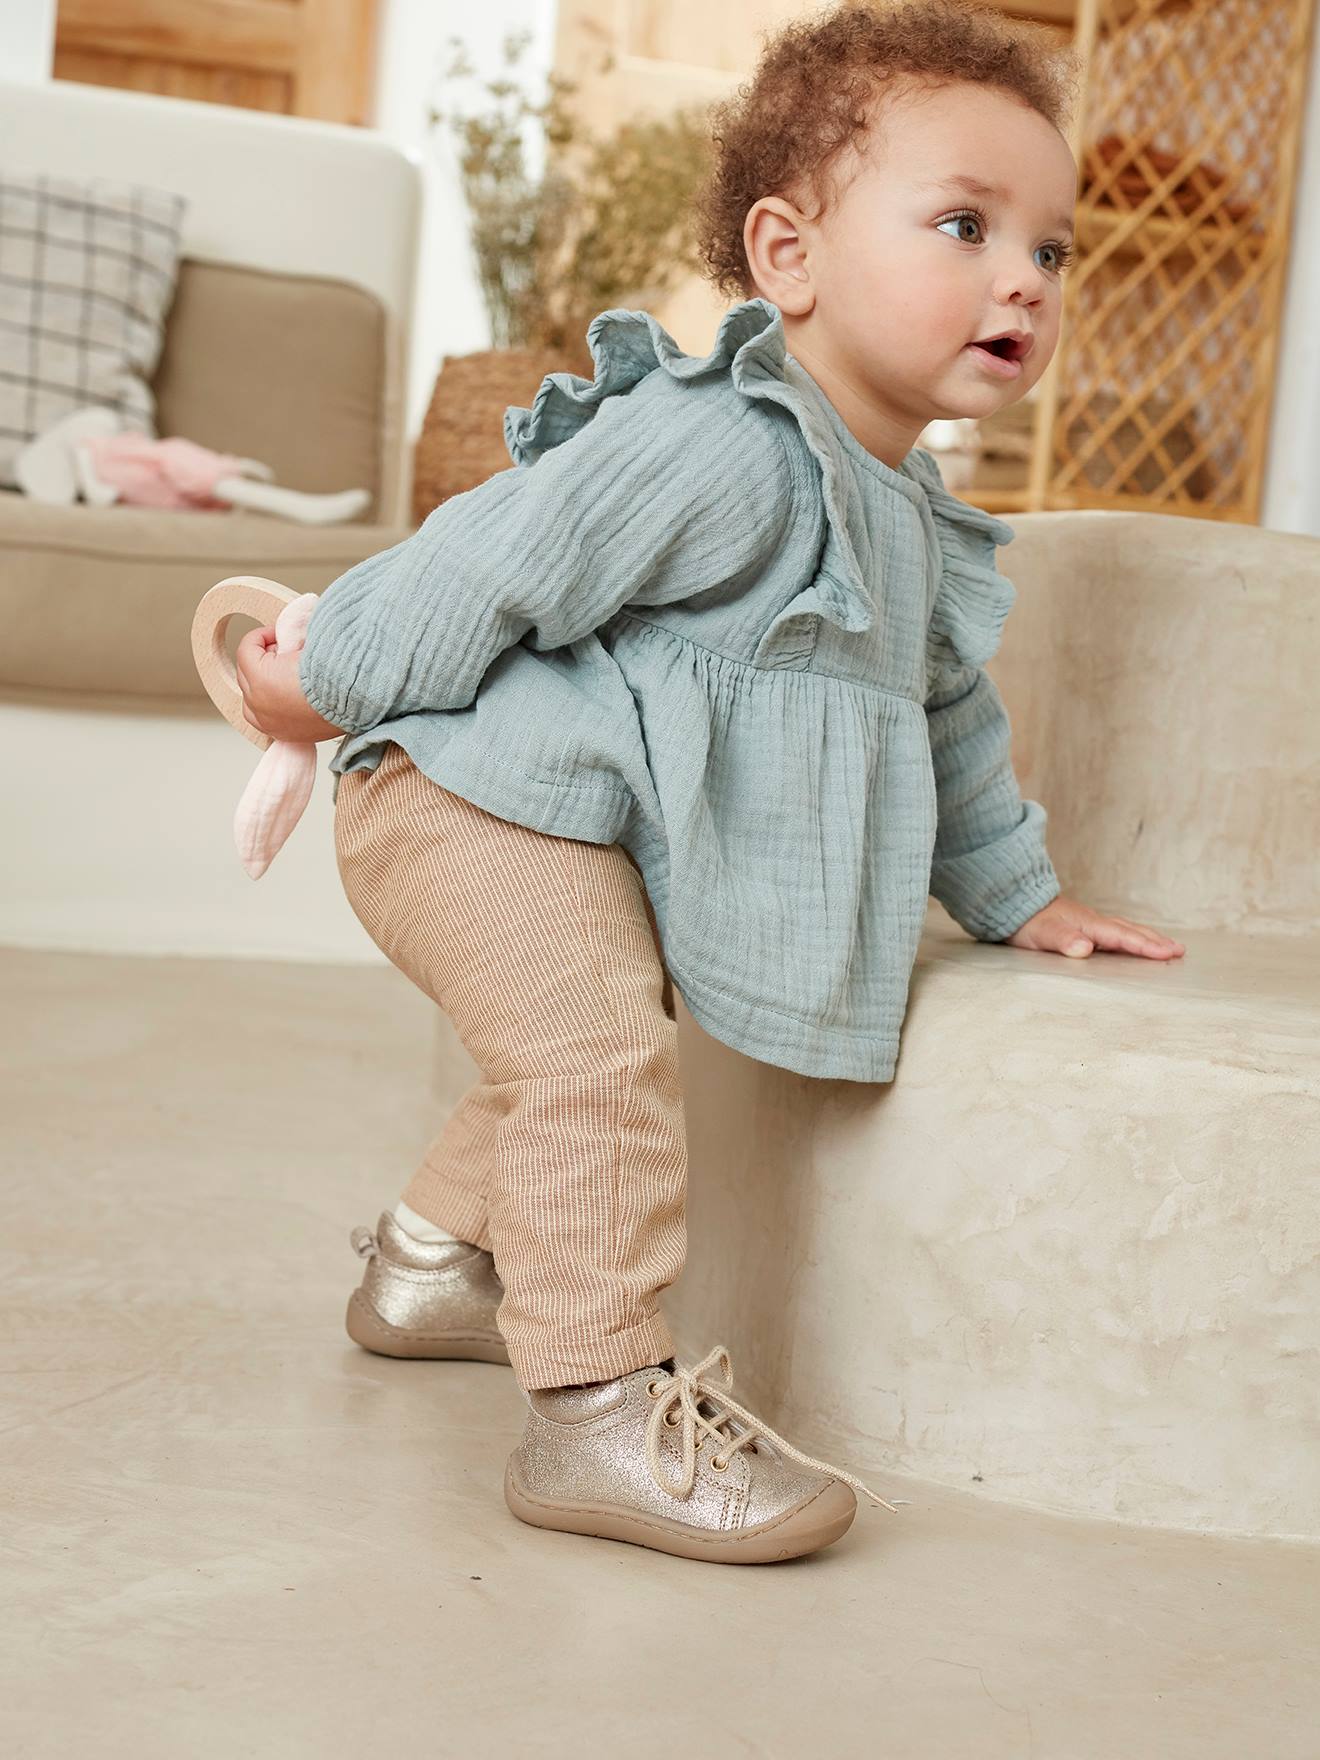 Bébé fille de 0 à 2 ans chaussures bébé fille - bébé fille de 0 à